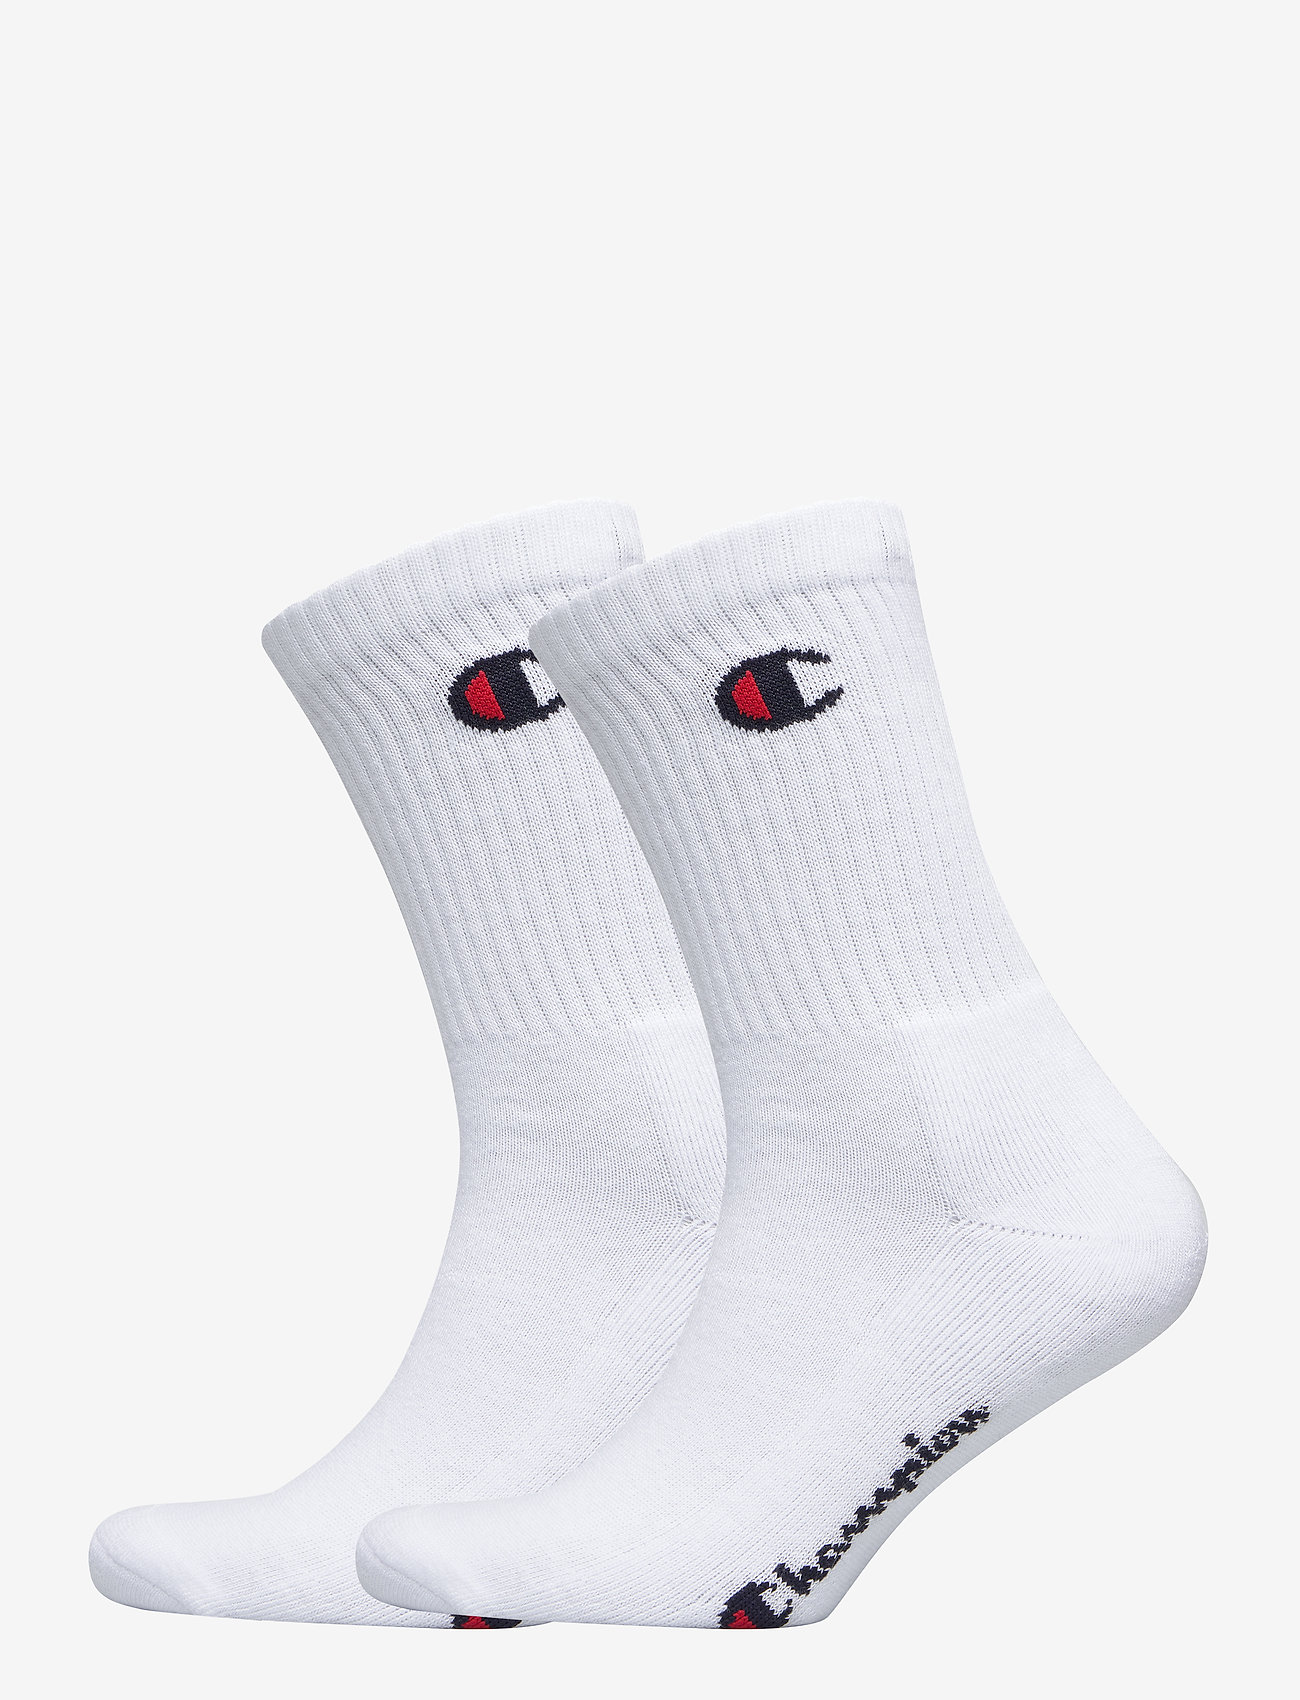 3pp Crew Socks (White) (12.75 